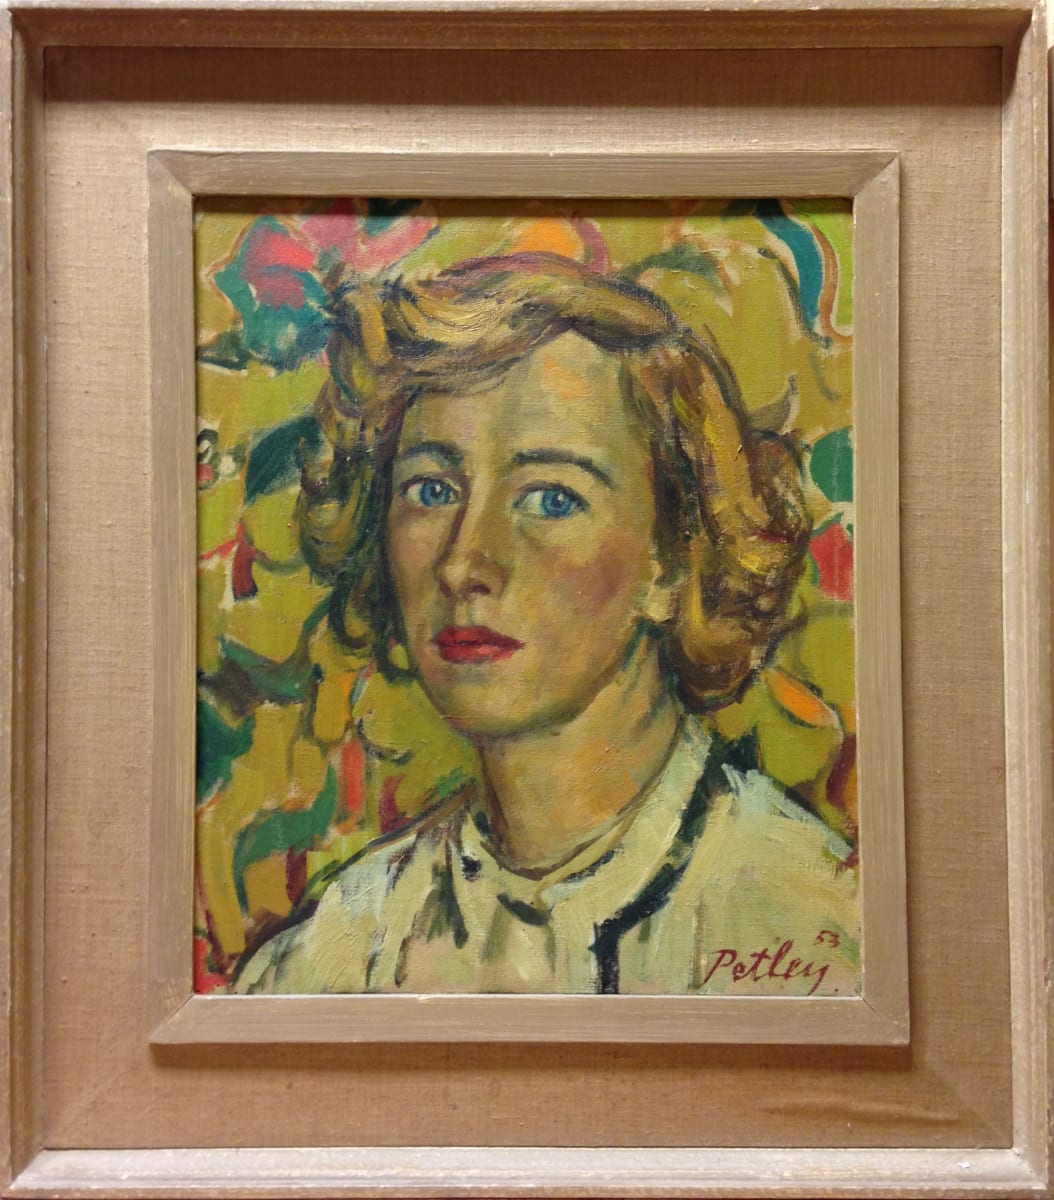 1071 - Portrait of a Woman by Llewellyn Petley-Jones (1908-1986) 